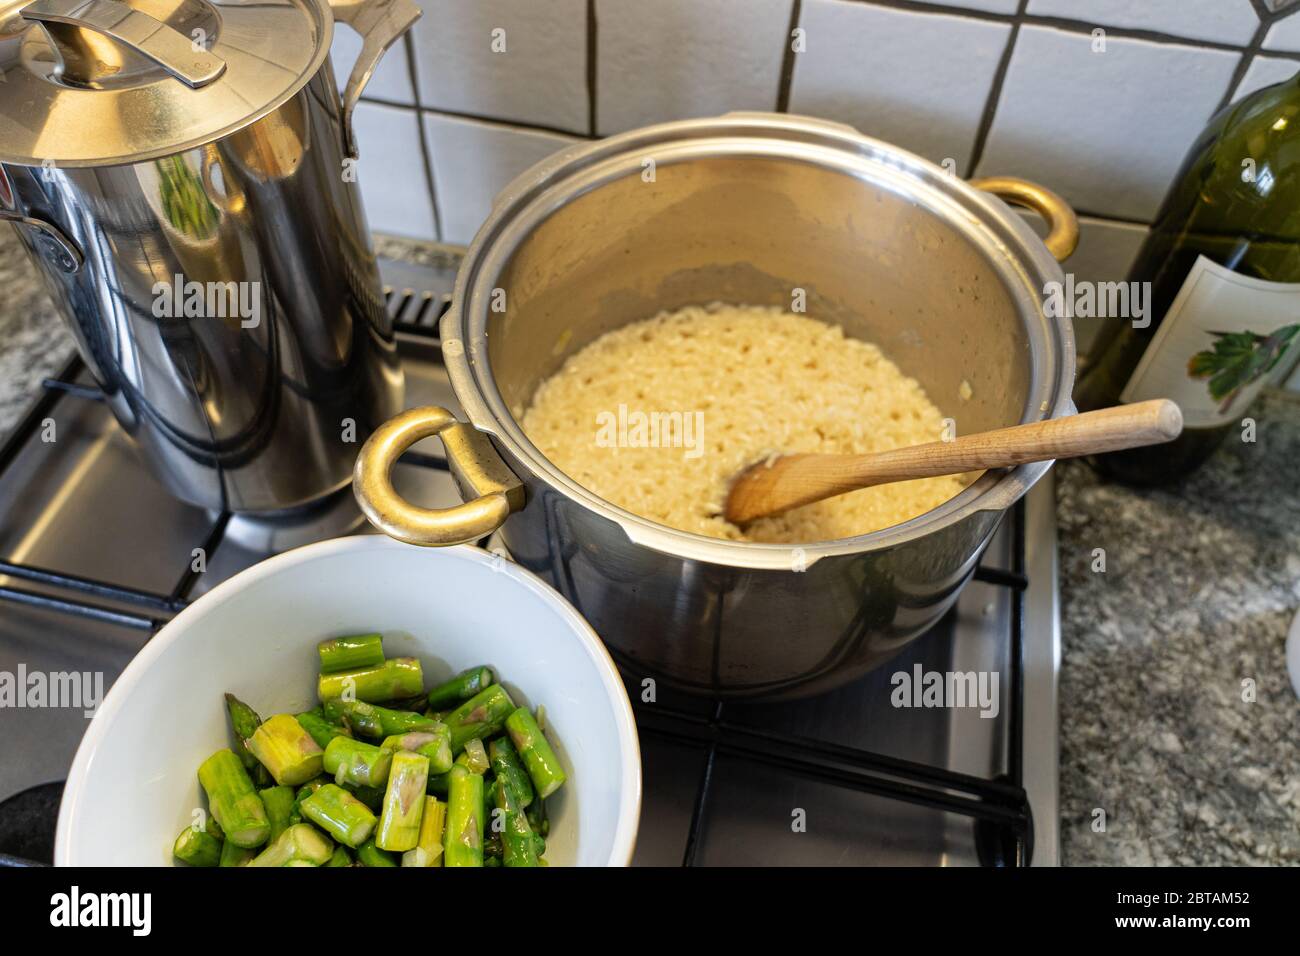 Cucinando del riso risotto con asparagi, cipolla e vino bianco. Affettato asparagi in ciotola davanti alla padella con riso. Vista ad angolo alto. Foto Stock